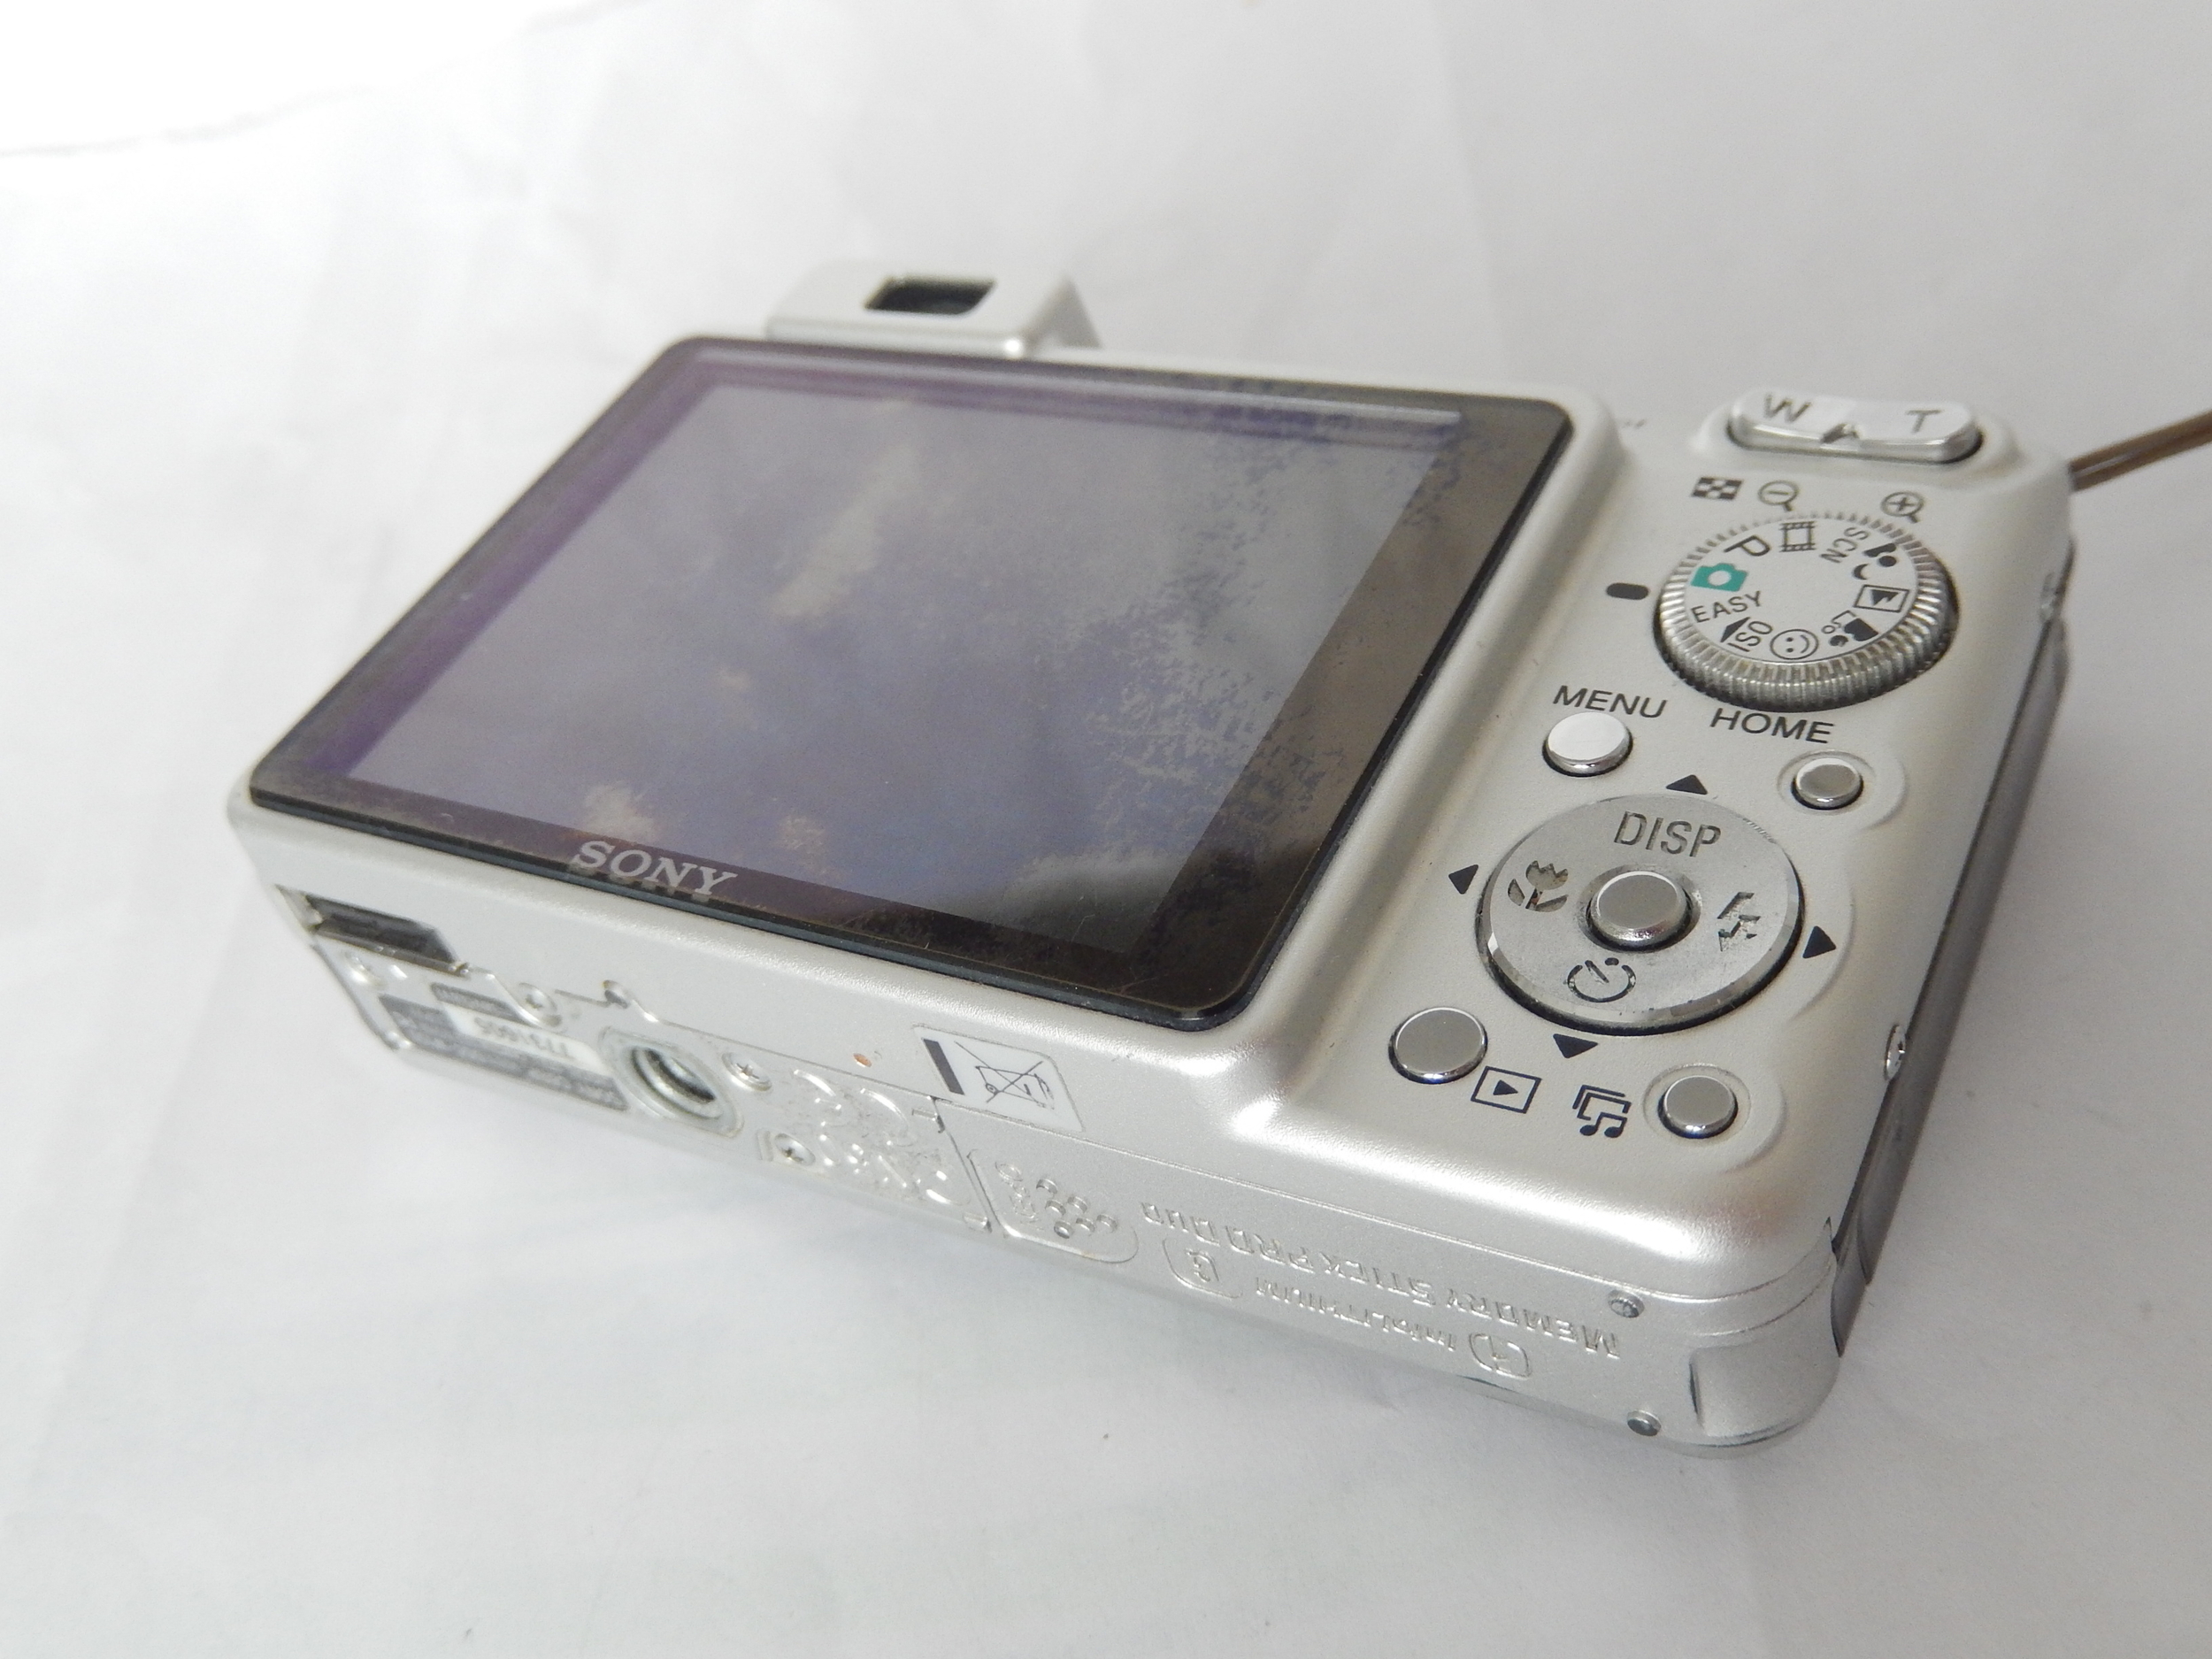 Sony DSC-W150 Cybershot VINTAGE